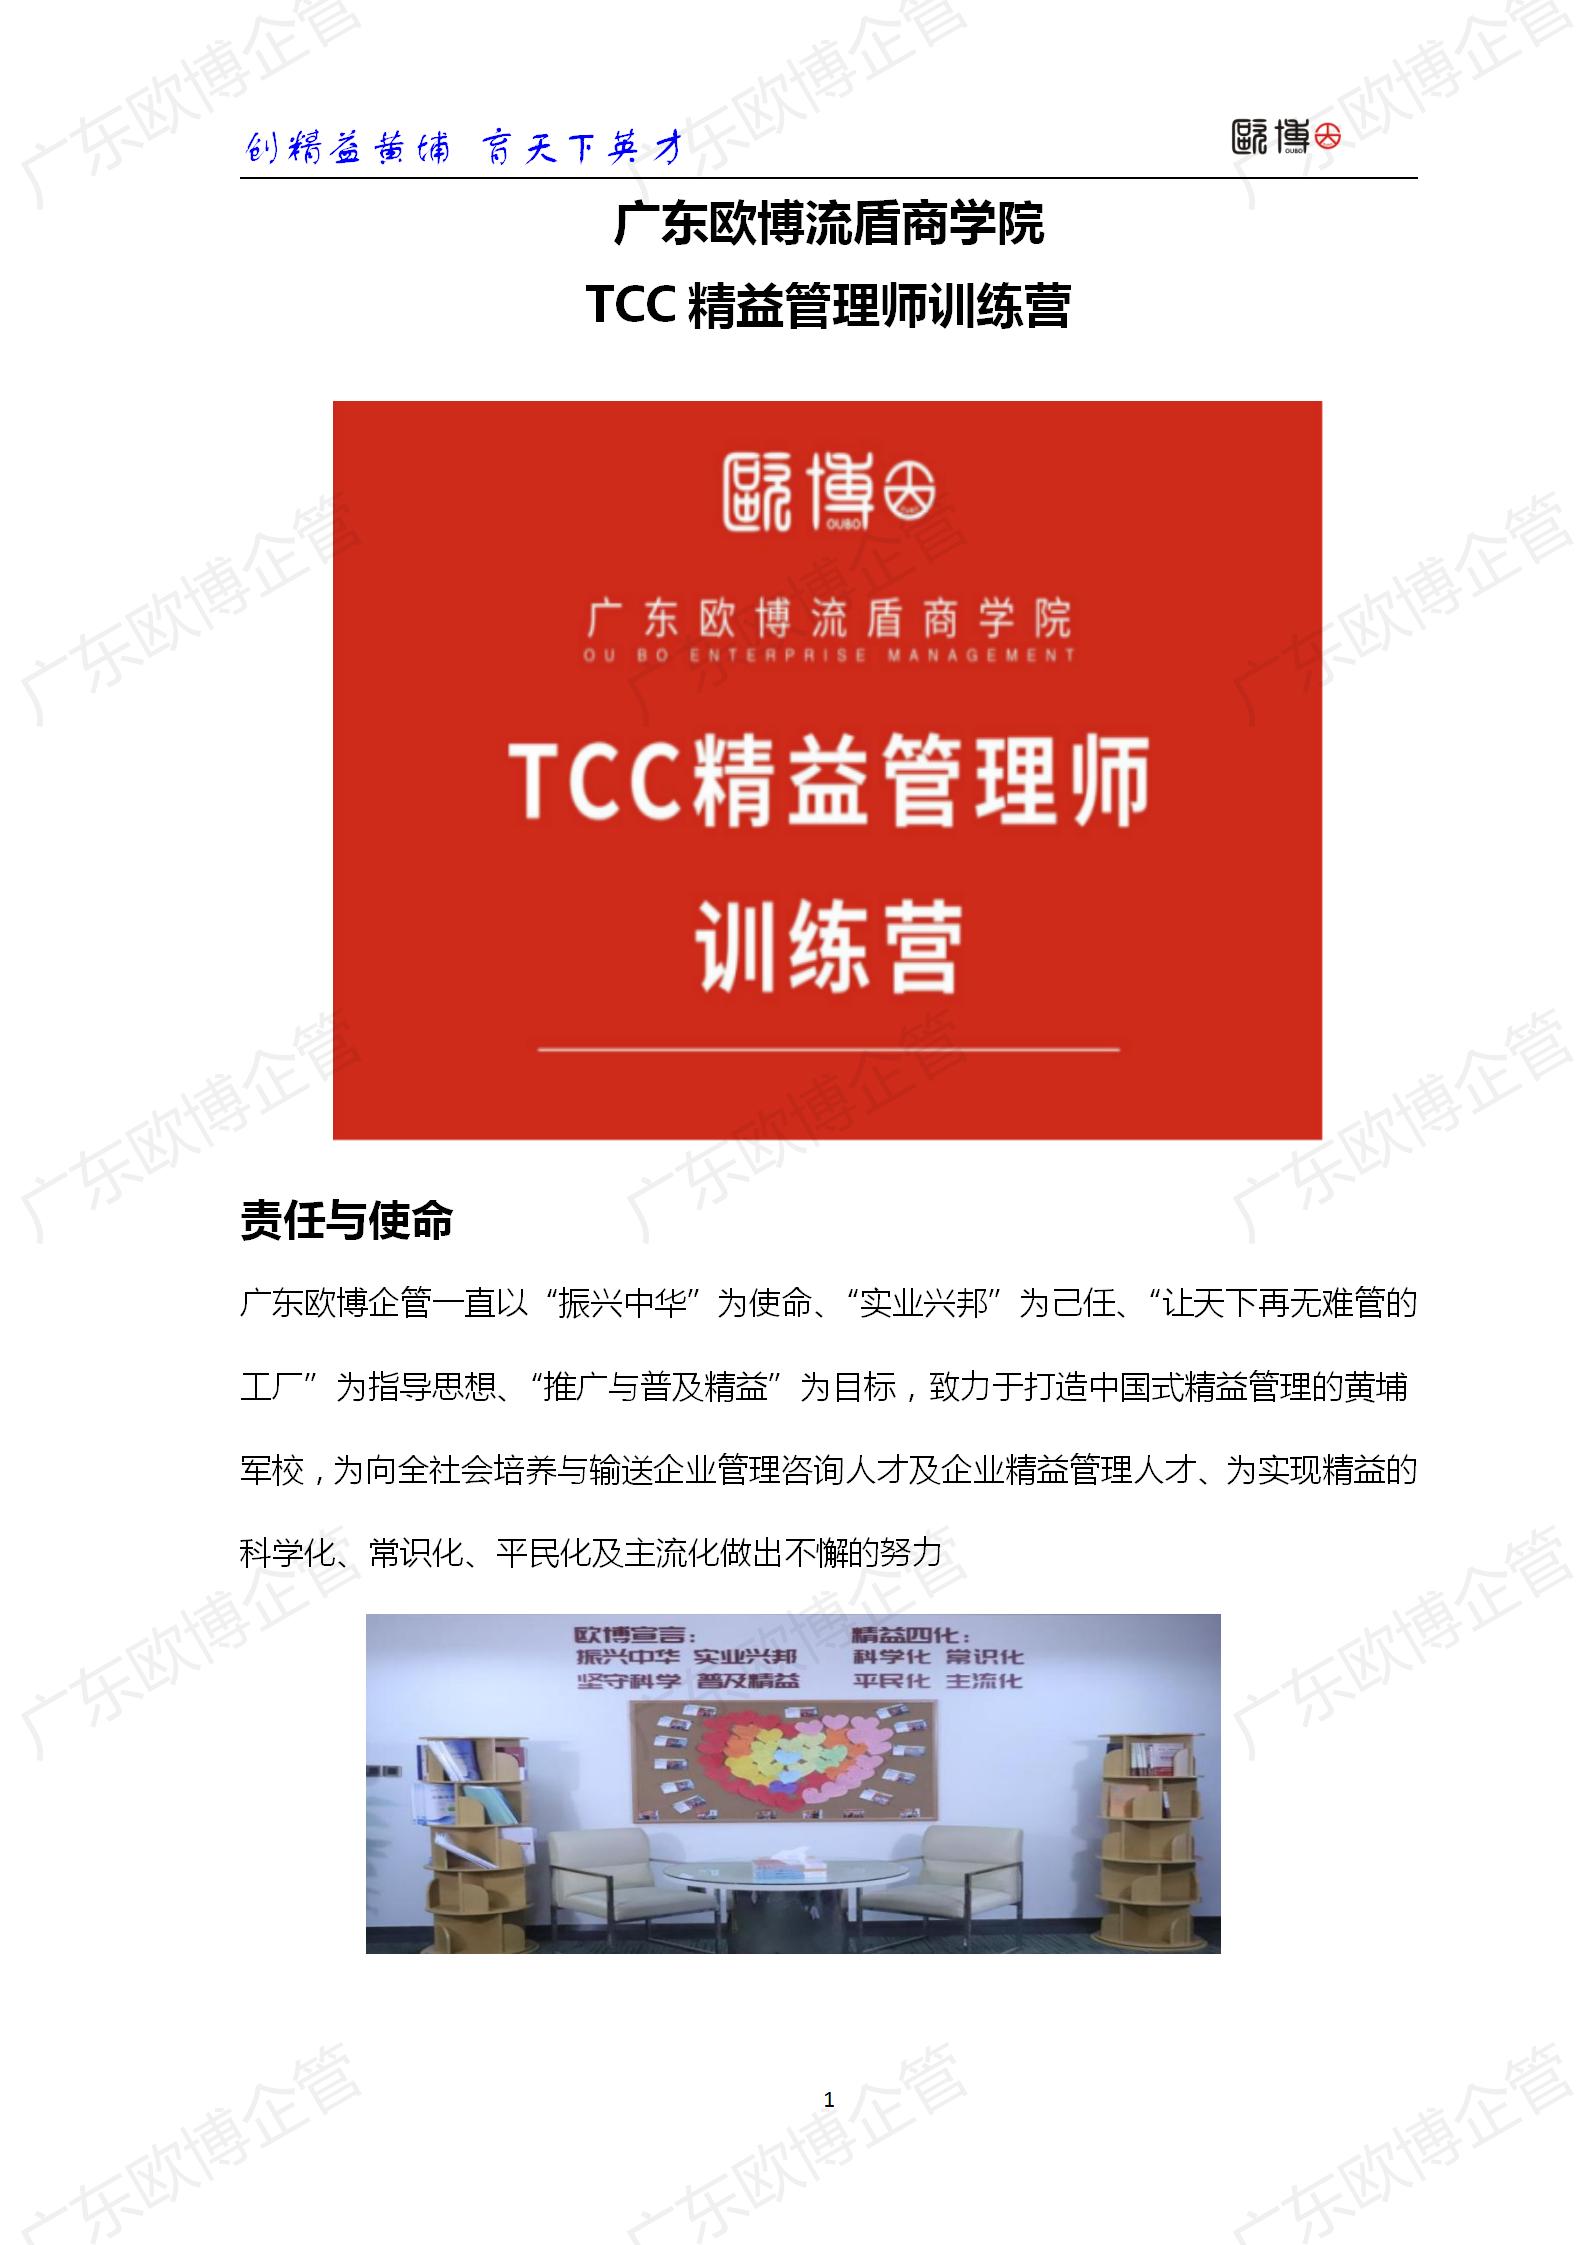 2022 广东欧博TCC精益管理师成才训练营简介0415_01.jpg